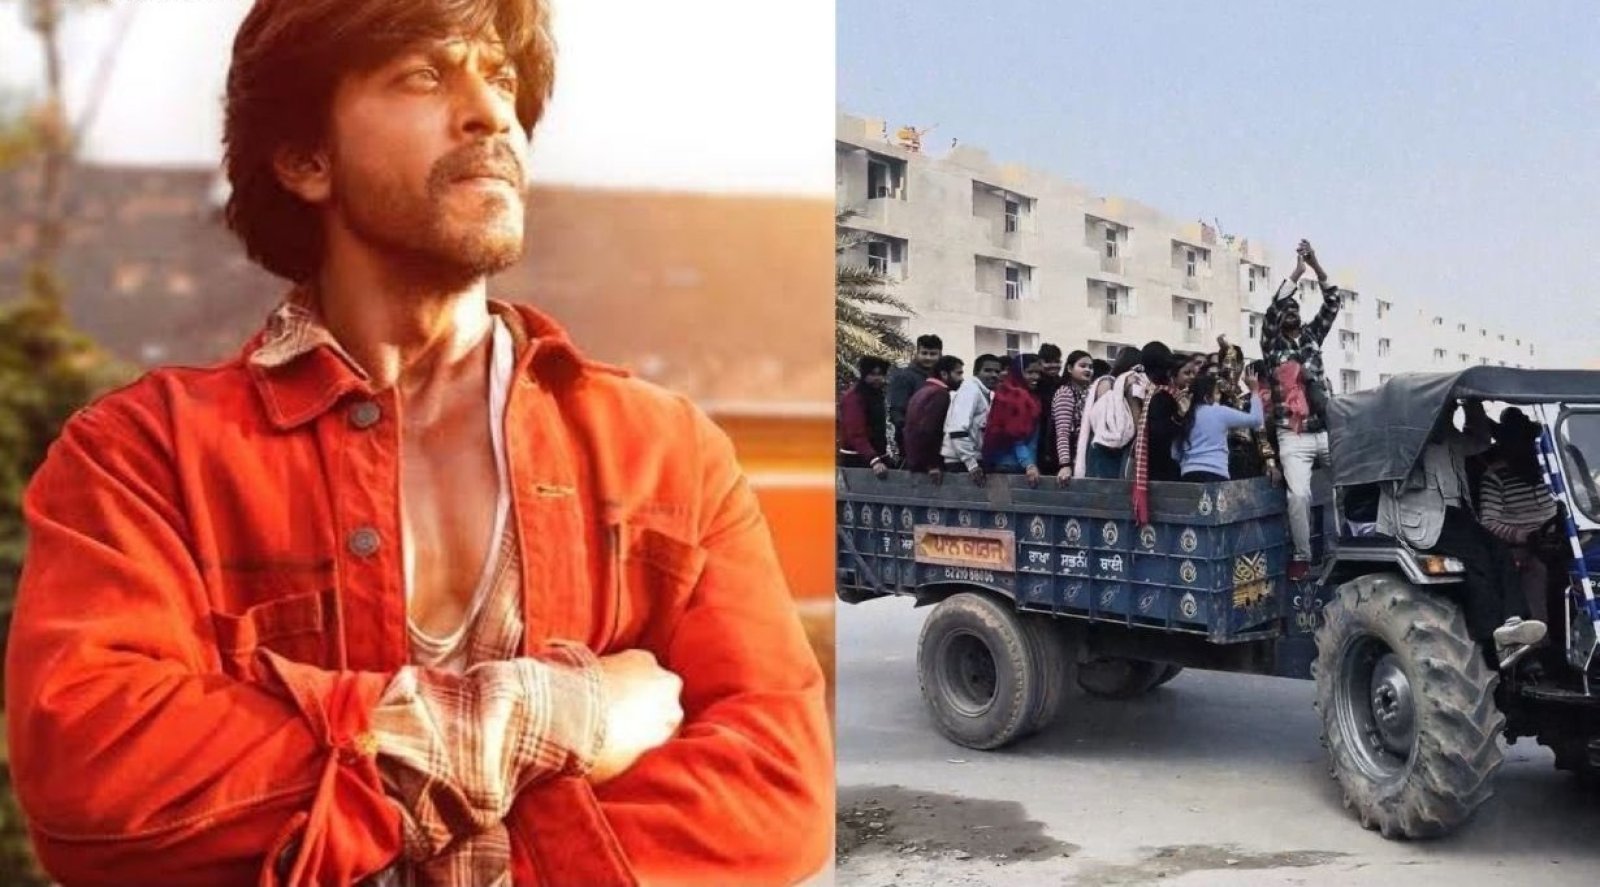 शाहरुख खान स्टारर 'डंकी' के लिए पंजाब के लोगों में नजर आया एक अलग ही क्रेज, ट्रैक्टरों पर सवार हो फिल्म देखने पहुंचे सिनेमाघर, देखें वीडियो